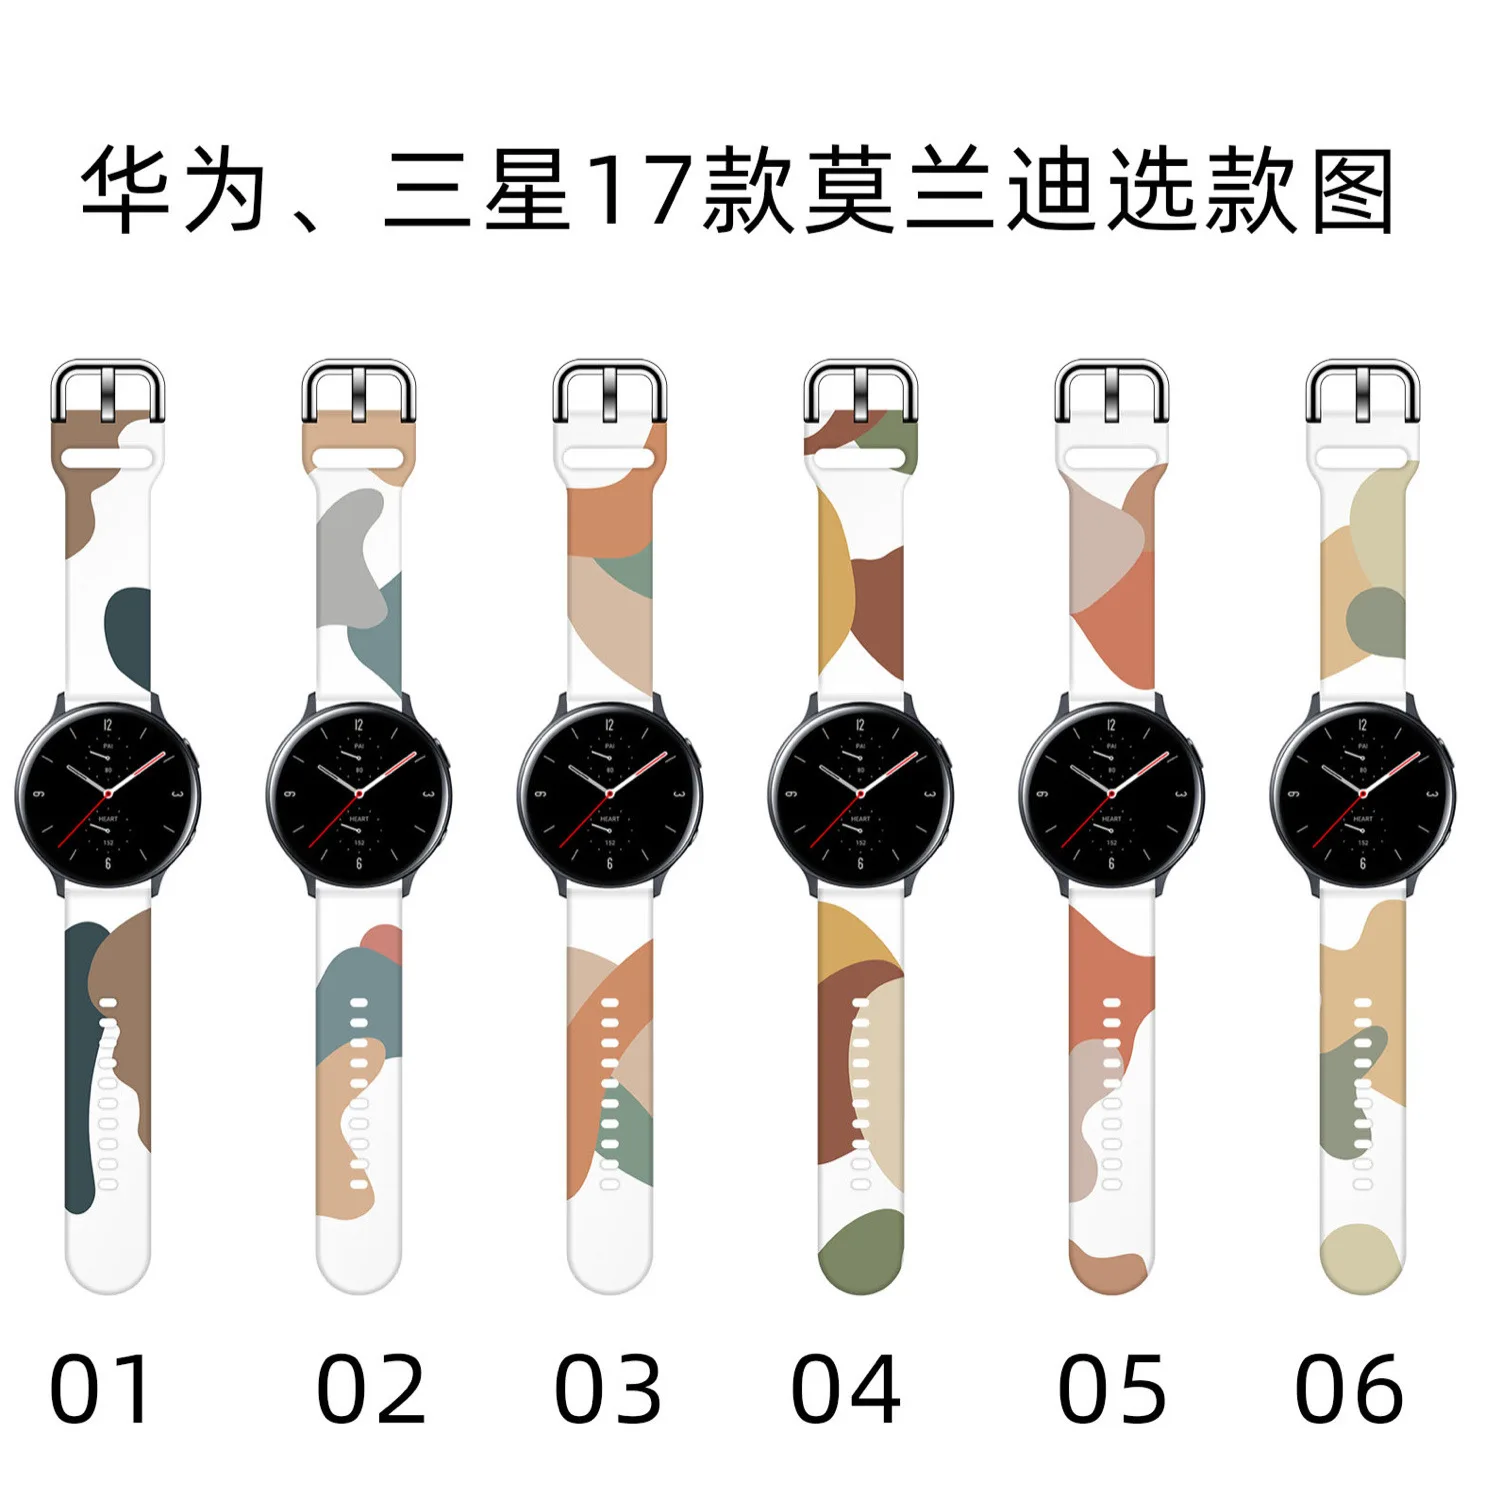 

Ремешок для Huawei watch GT GT2, сменный Браслет для Galaxy Watch 4 3, Galaxy Watch Active 2, Amazfit GTR Amazfit bip, 20 мм 22 мм